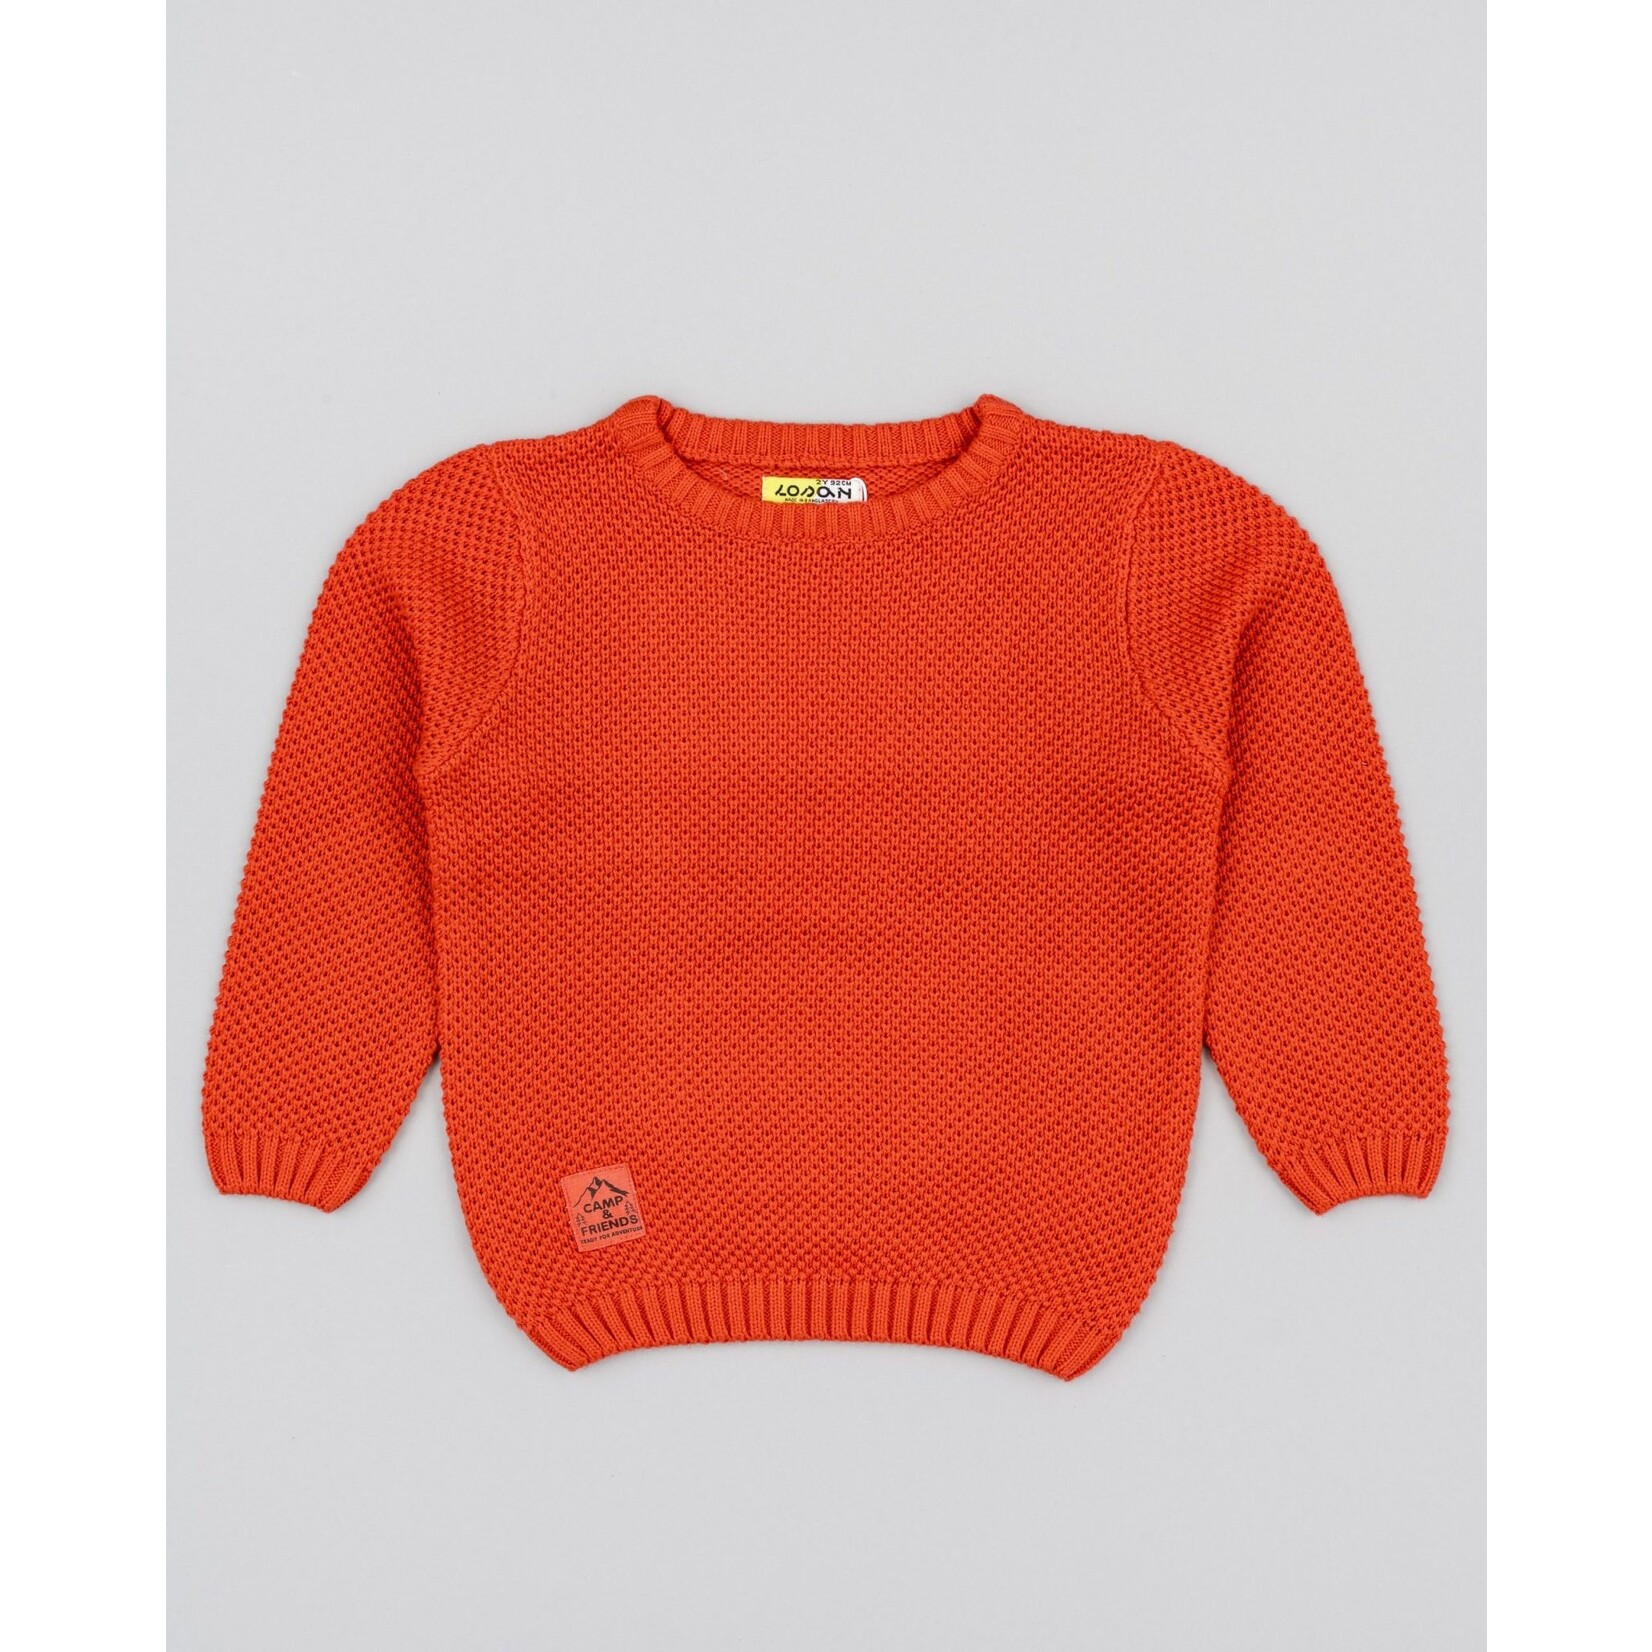 Losan LOSAN - Plain Dark Orange Knit Sweater 'Camp Friends'